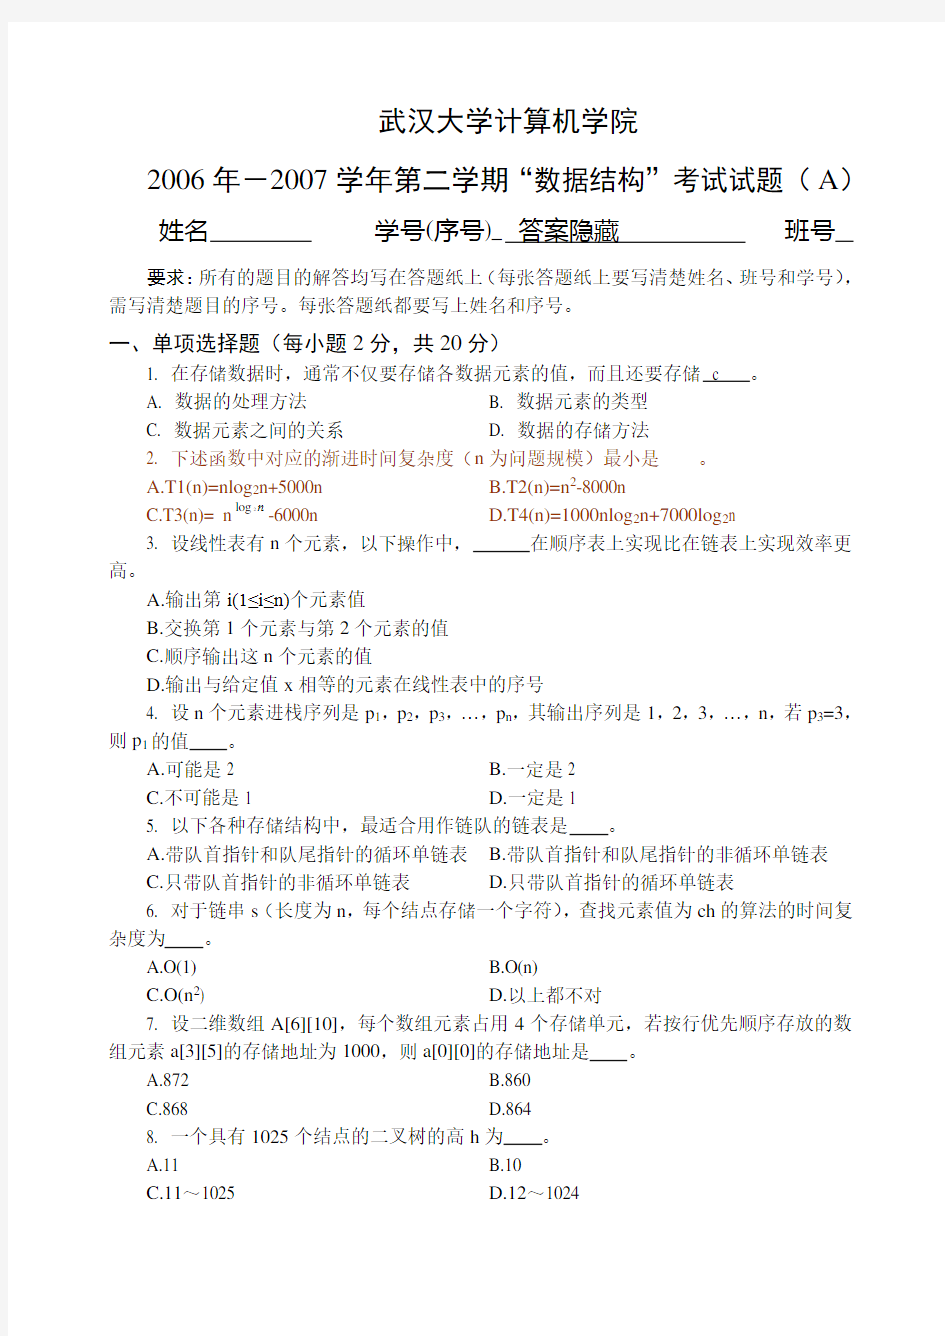 武汉大学计算机学院数据结构06级试题(A)含标准答案